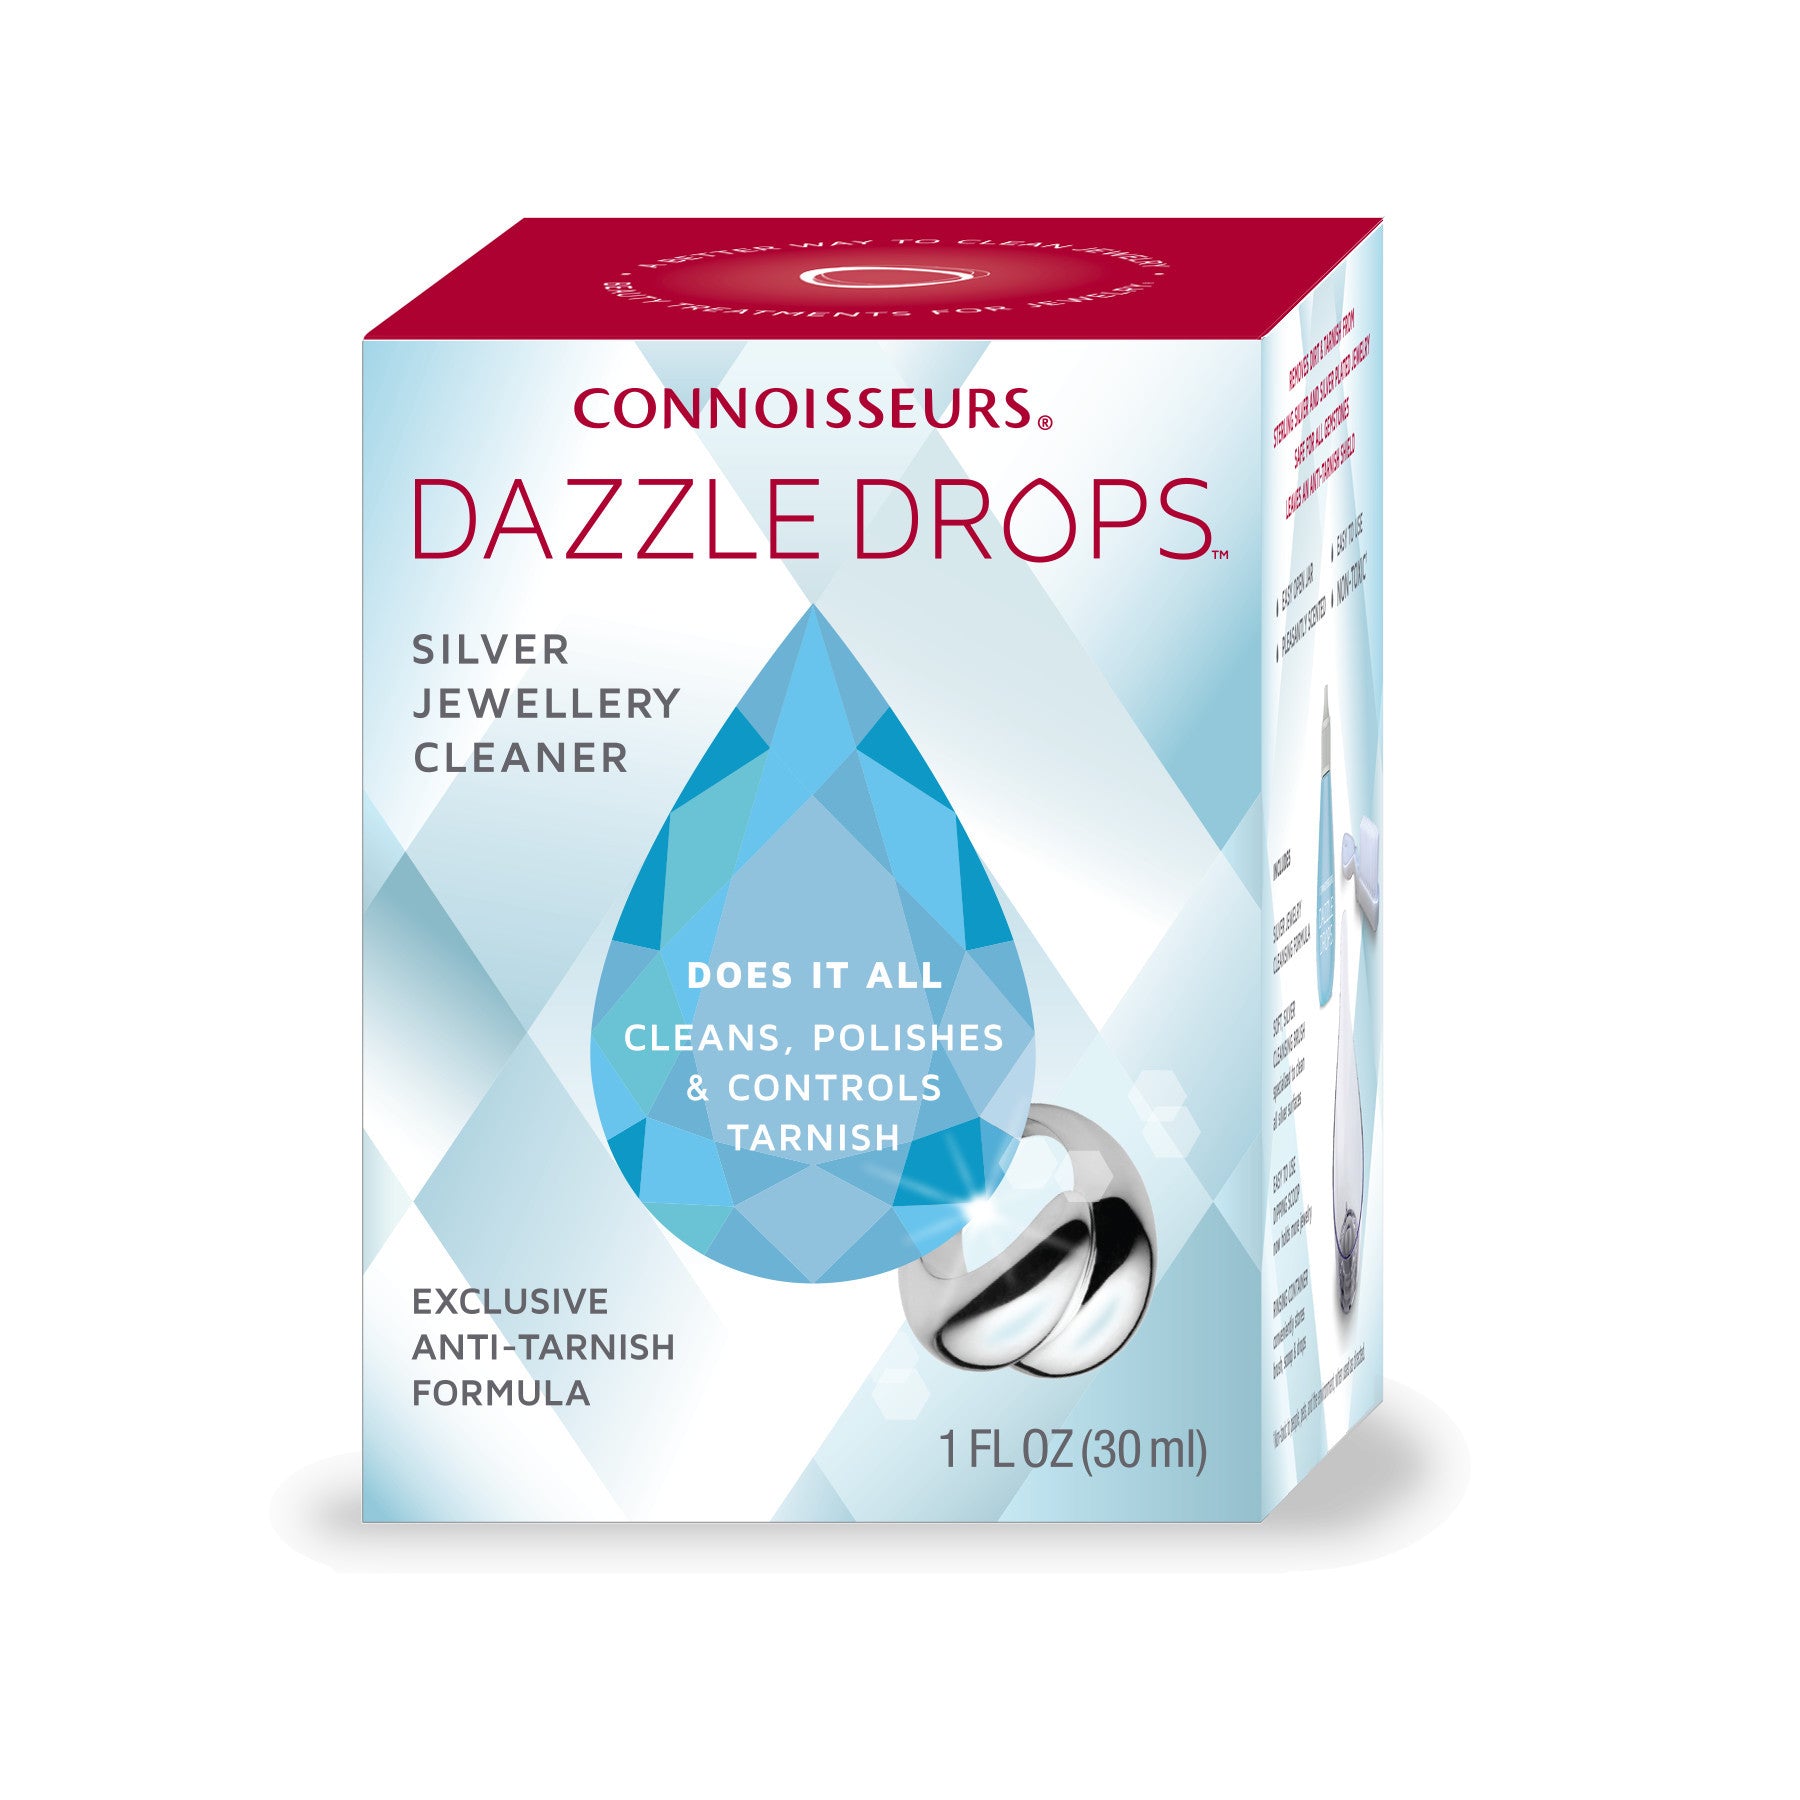 Connoisseurs Silver Dazzle Drops